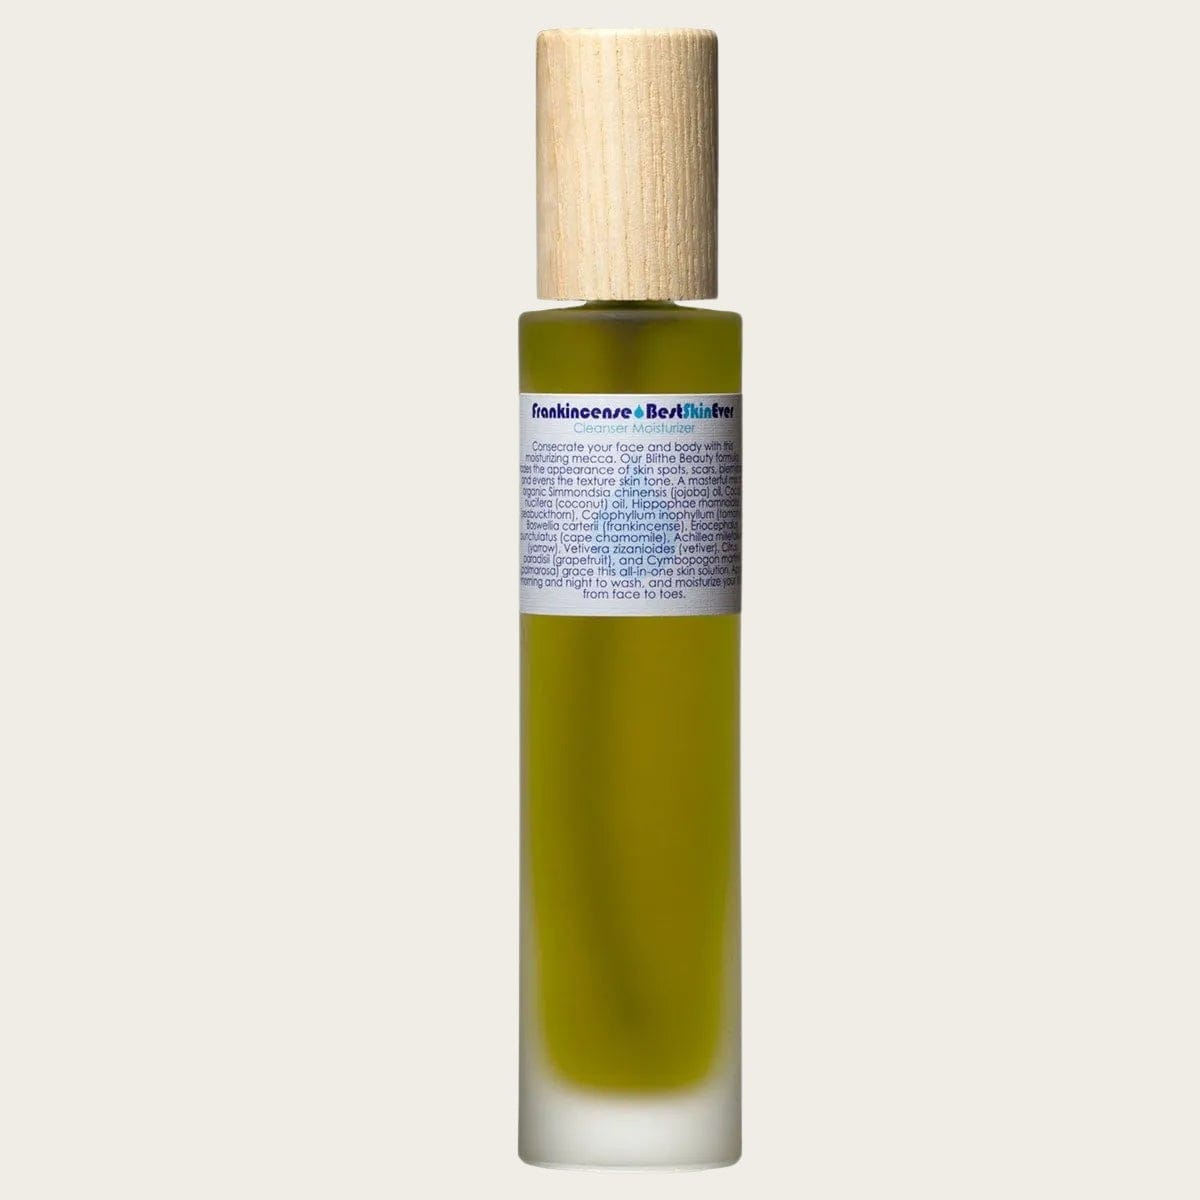 Living Libations Cleanser Moisturizer Nourisher Best Skin Ever - Frankincense sunja link - canada